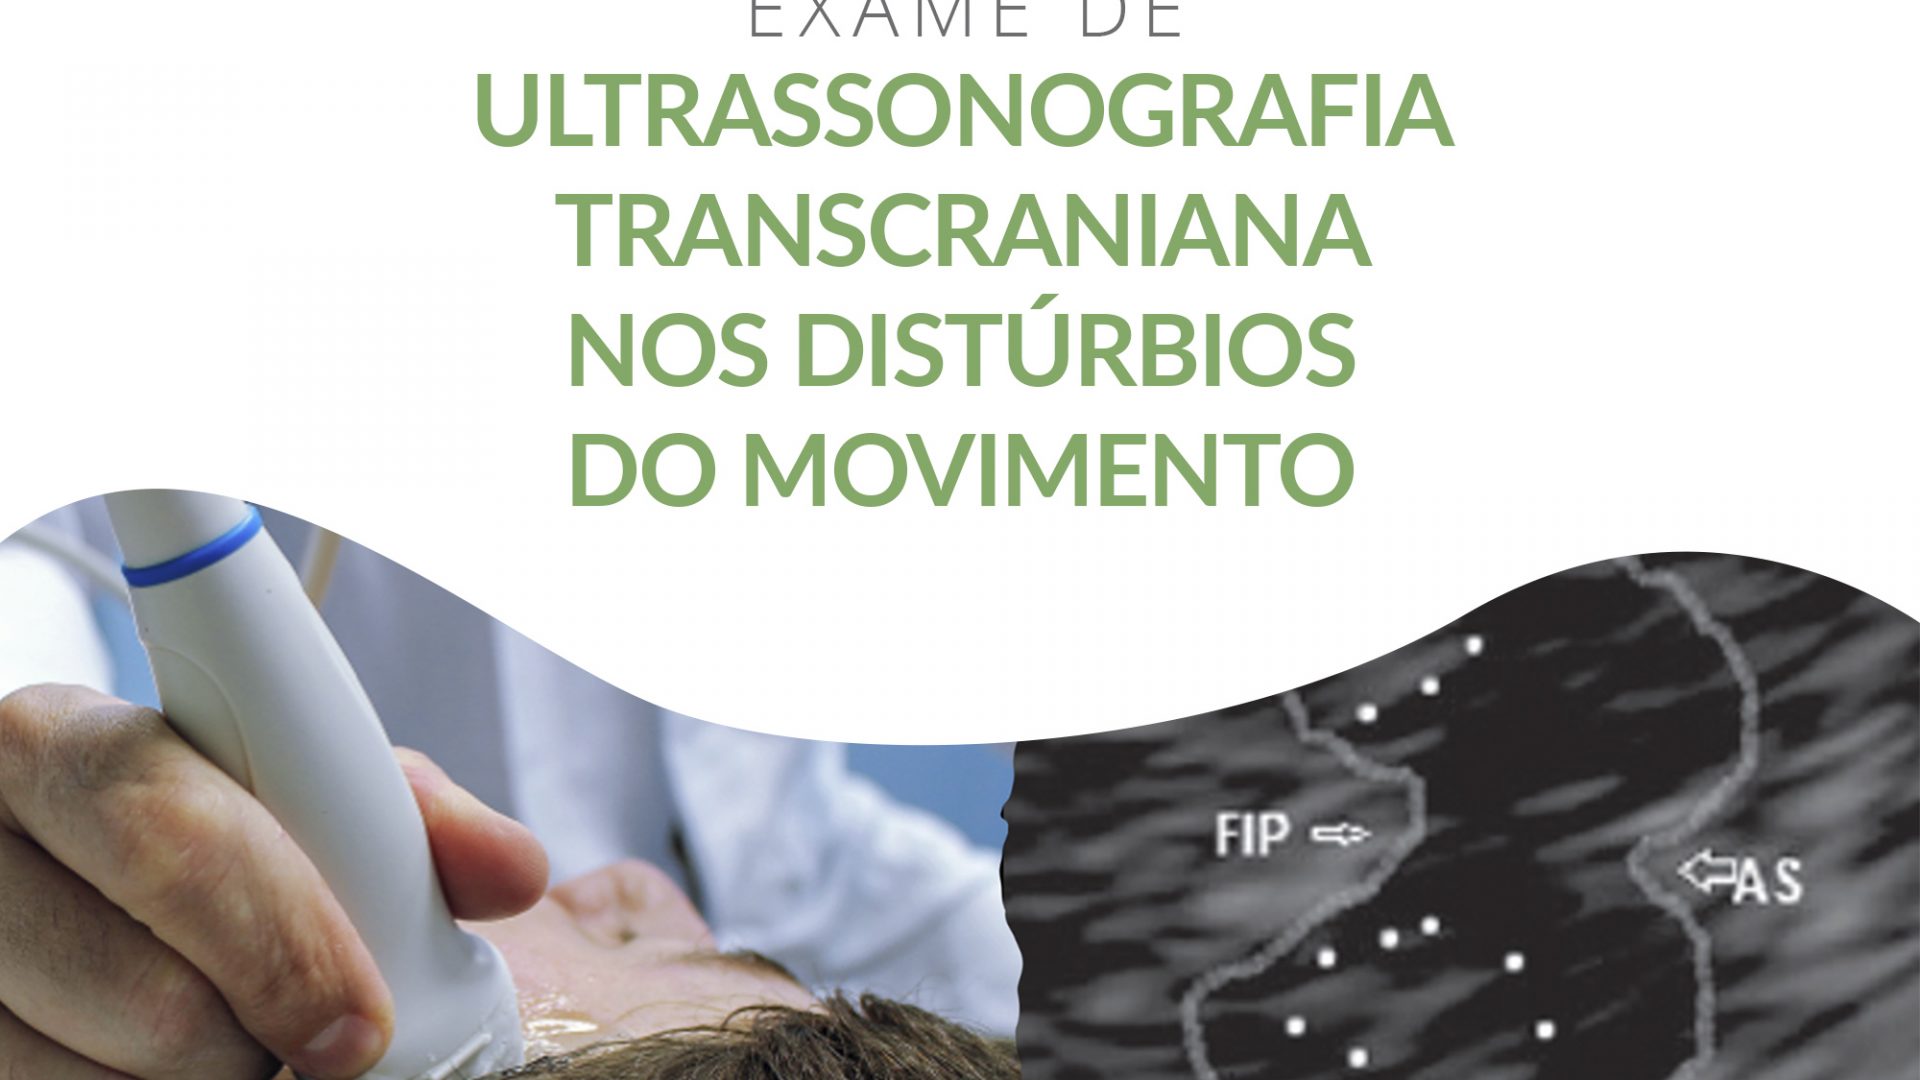 Ultrassonografia Transcraniana nos Distúrbios do Movimento